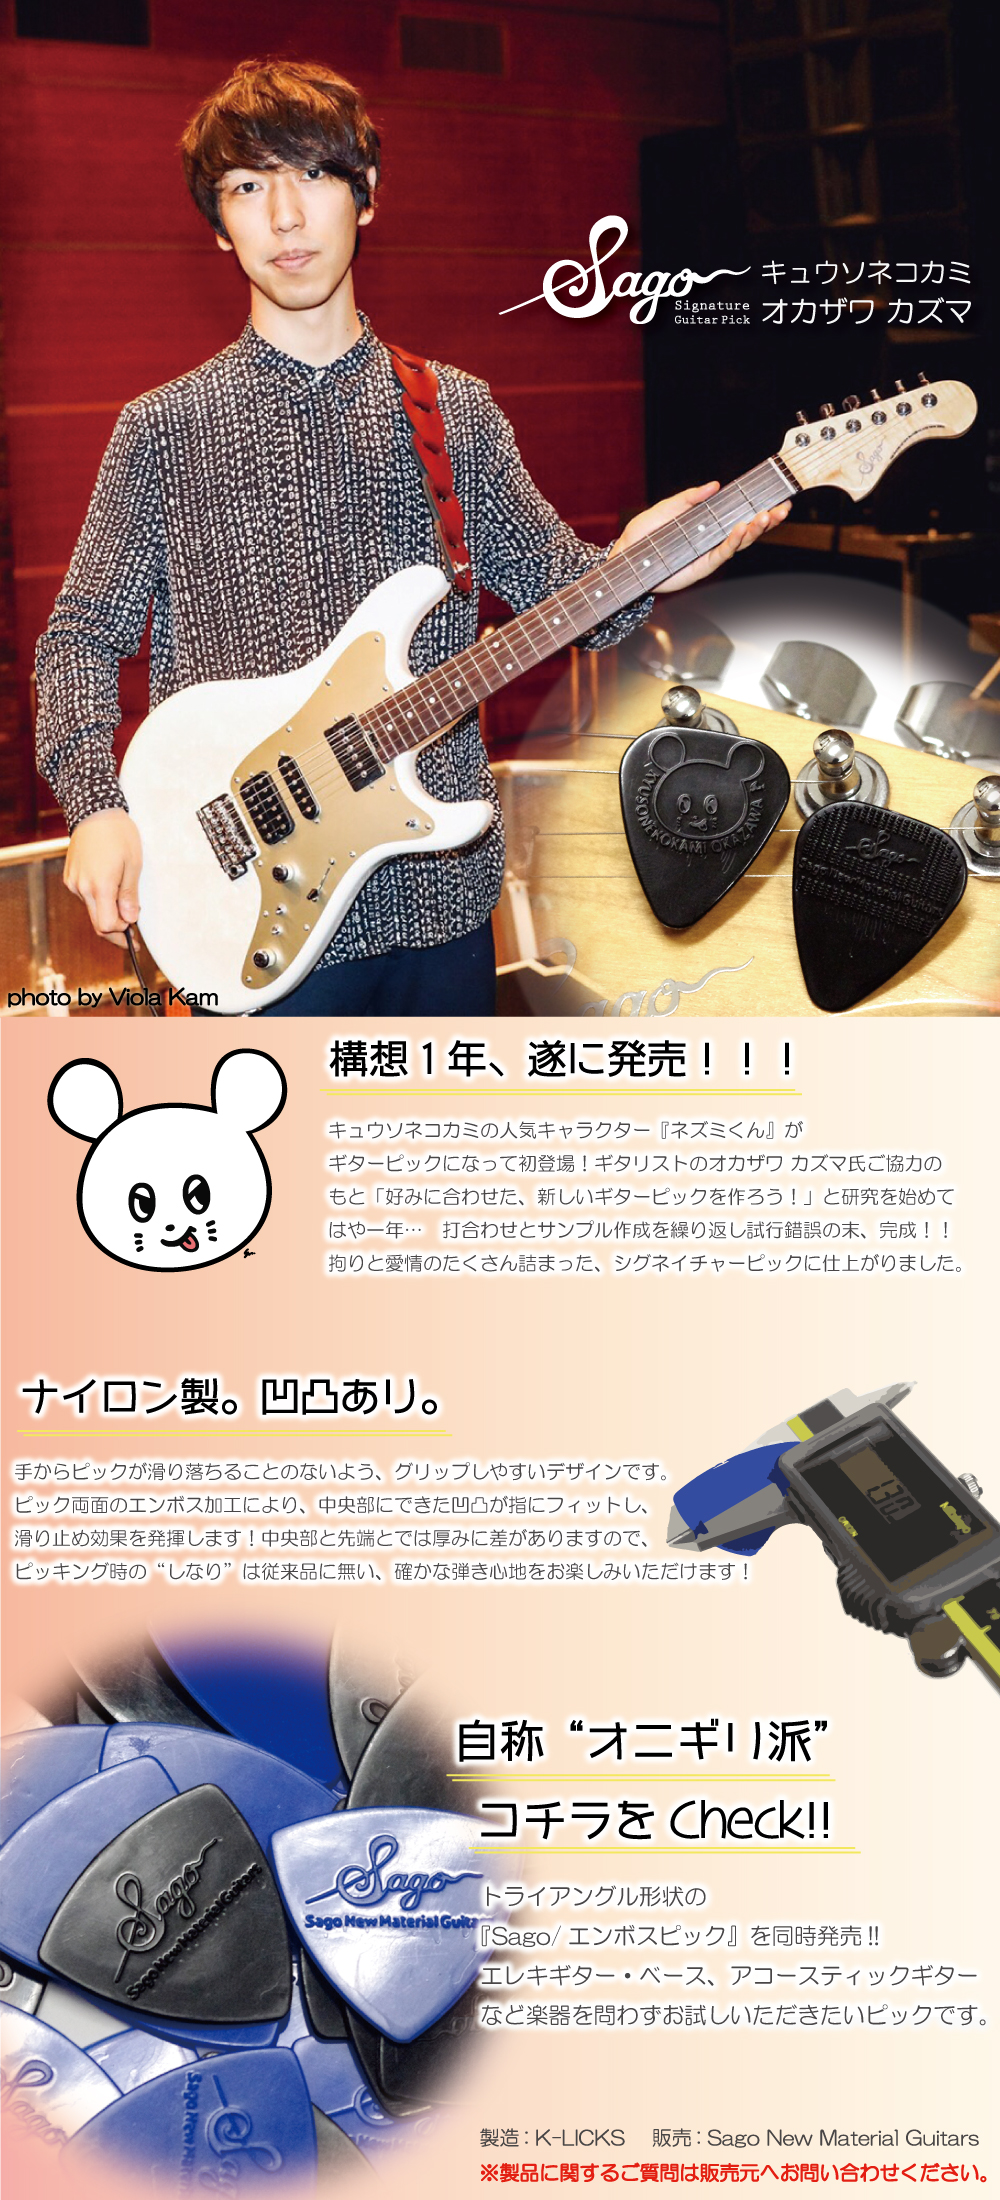 キュウソネコカミ オカザワカズマ シグネイチャーギターピック ネズミくん Sago New Material Guitars